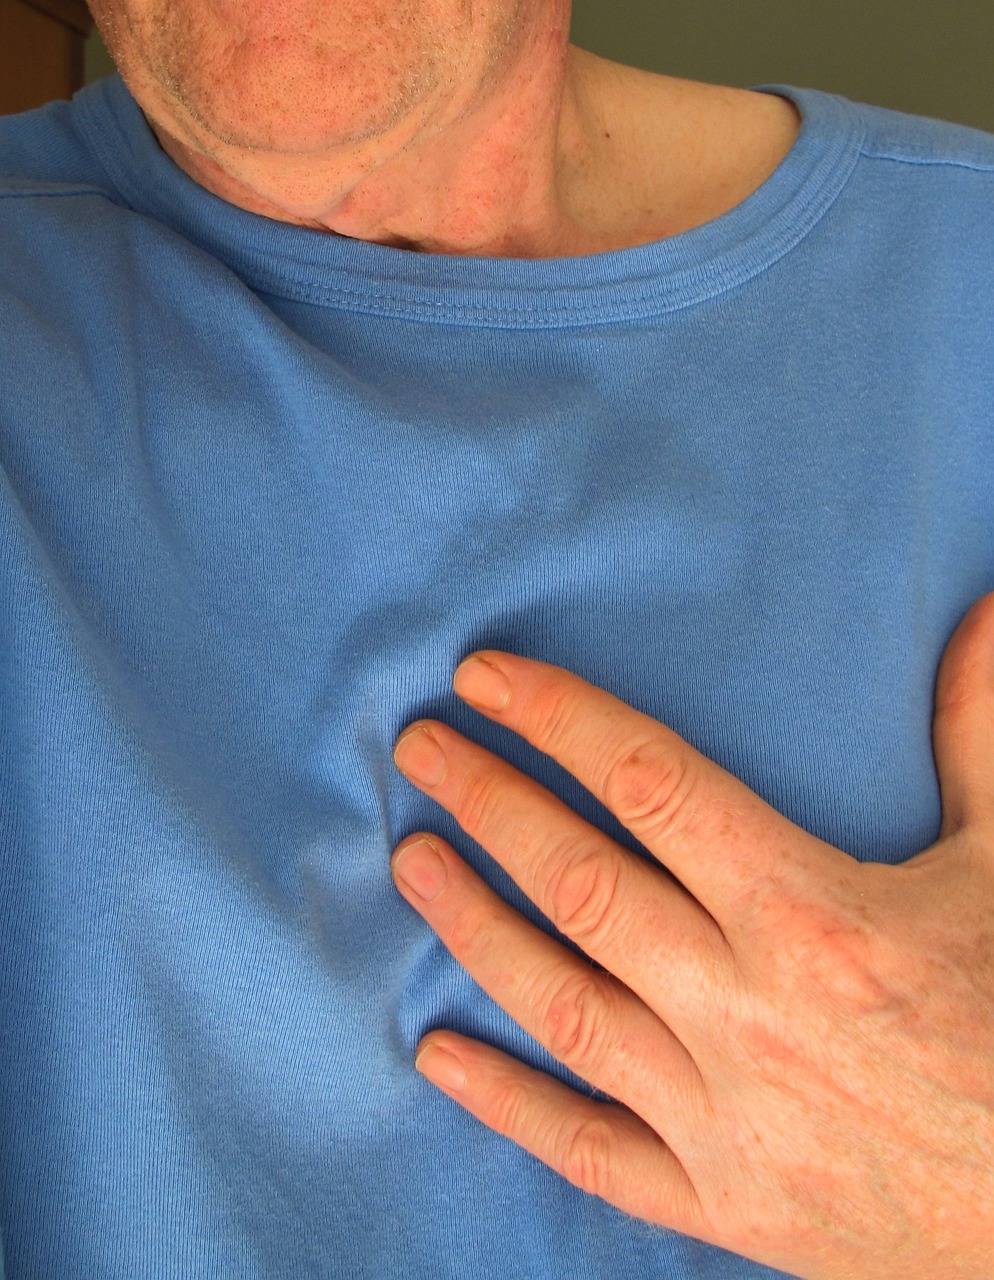 Ostruzione delle arterie coronarie, come prevenirla e capire tempestivamente se è in corso